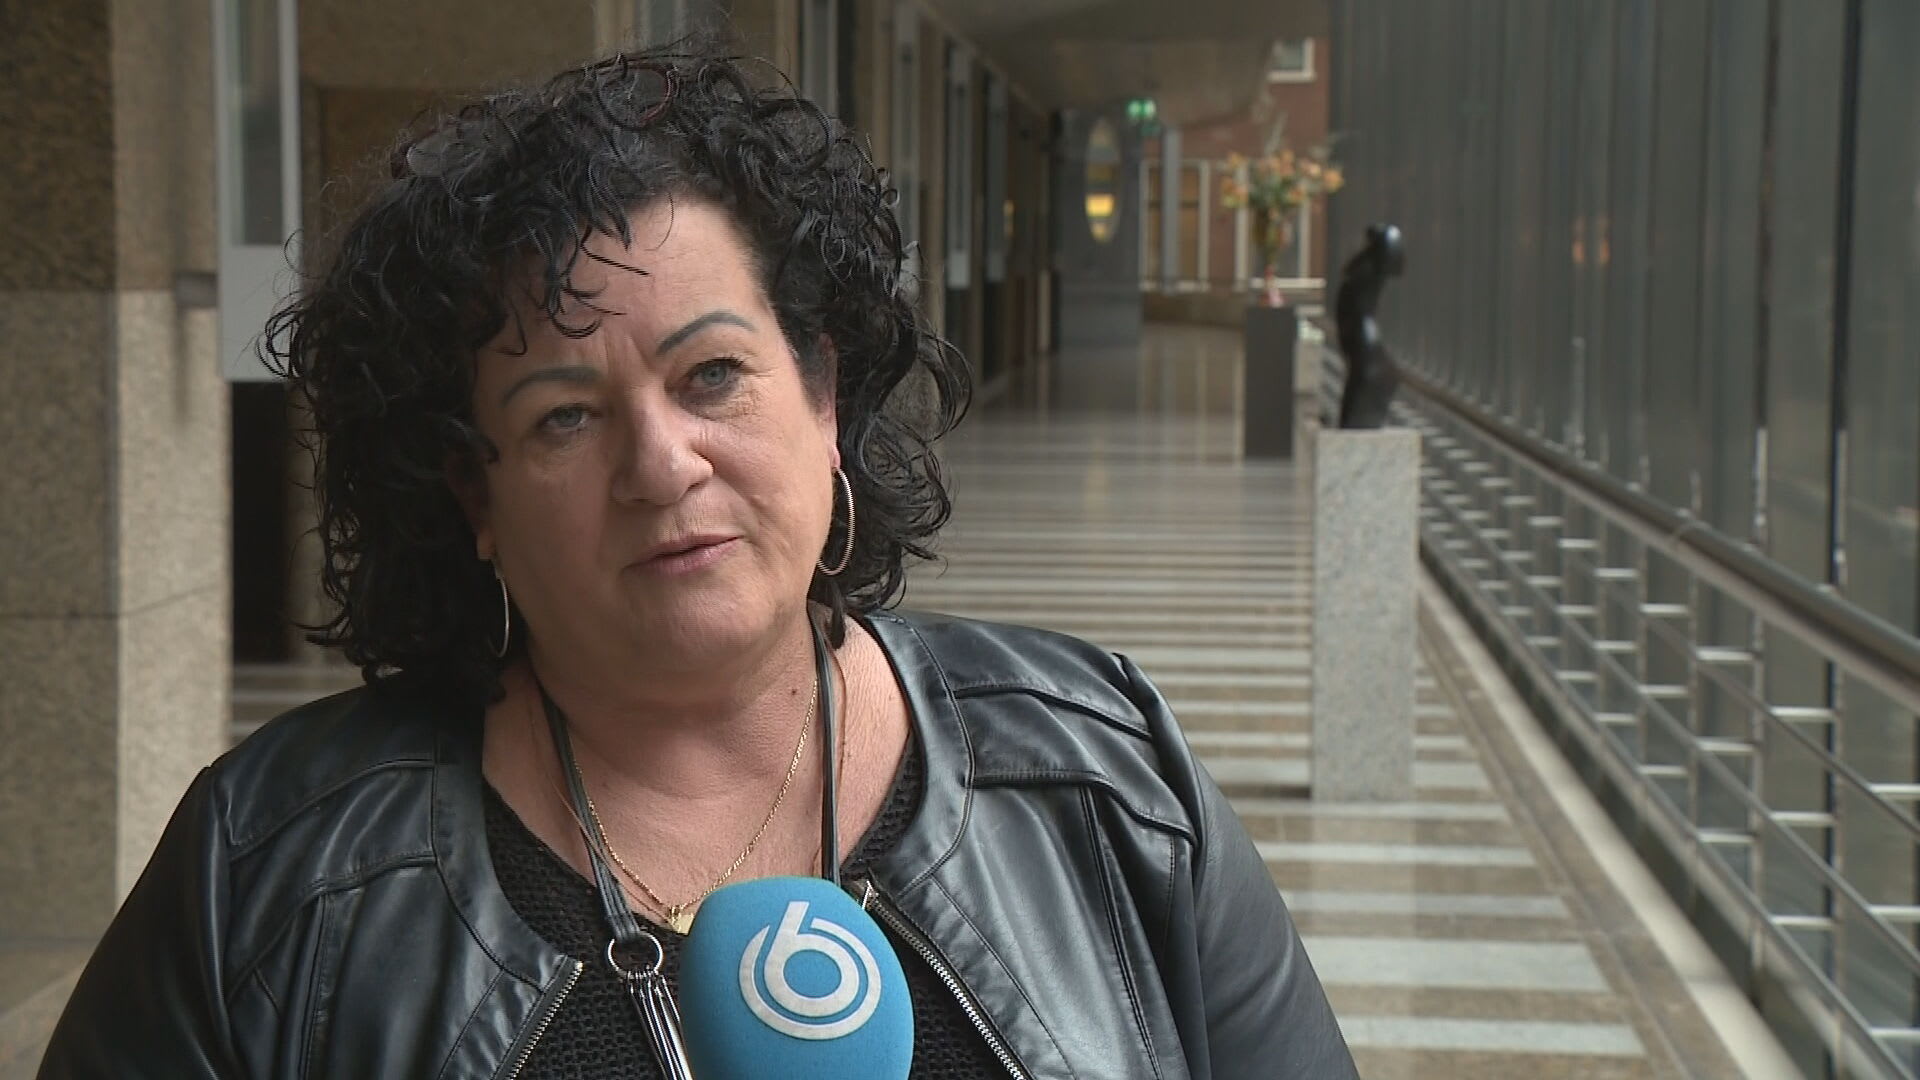 Caroline van der Plas (BBB) doet tijdelijk stap terug vanwege doodsbedreigingen